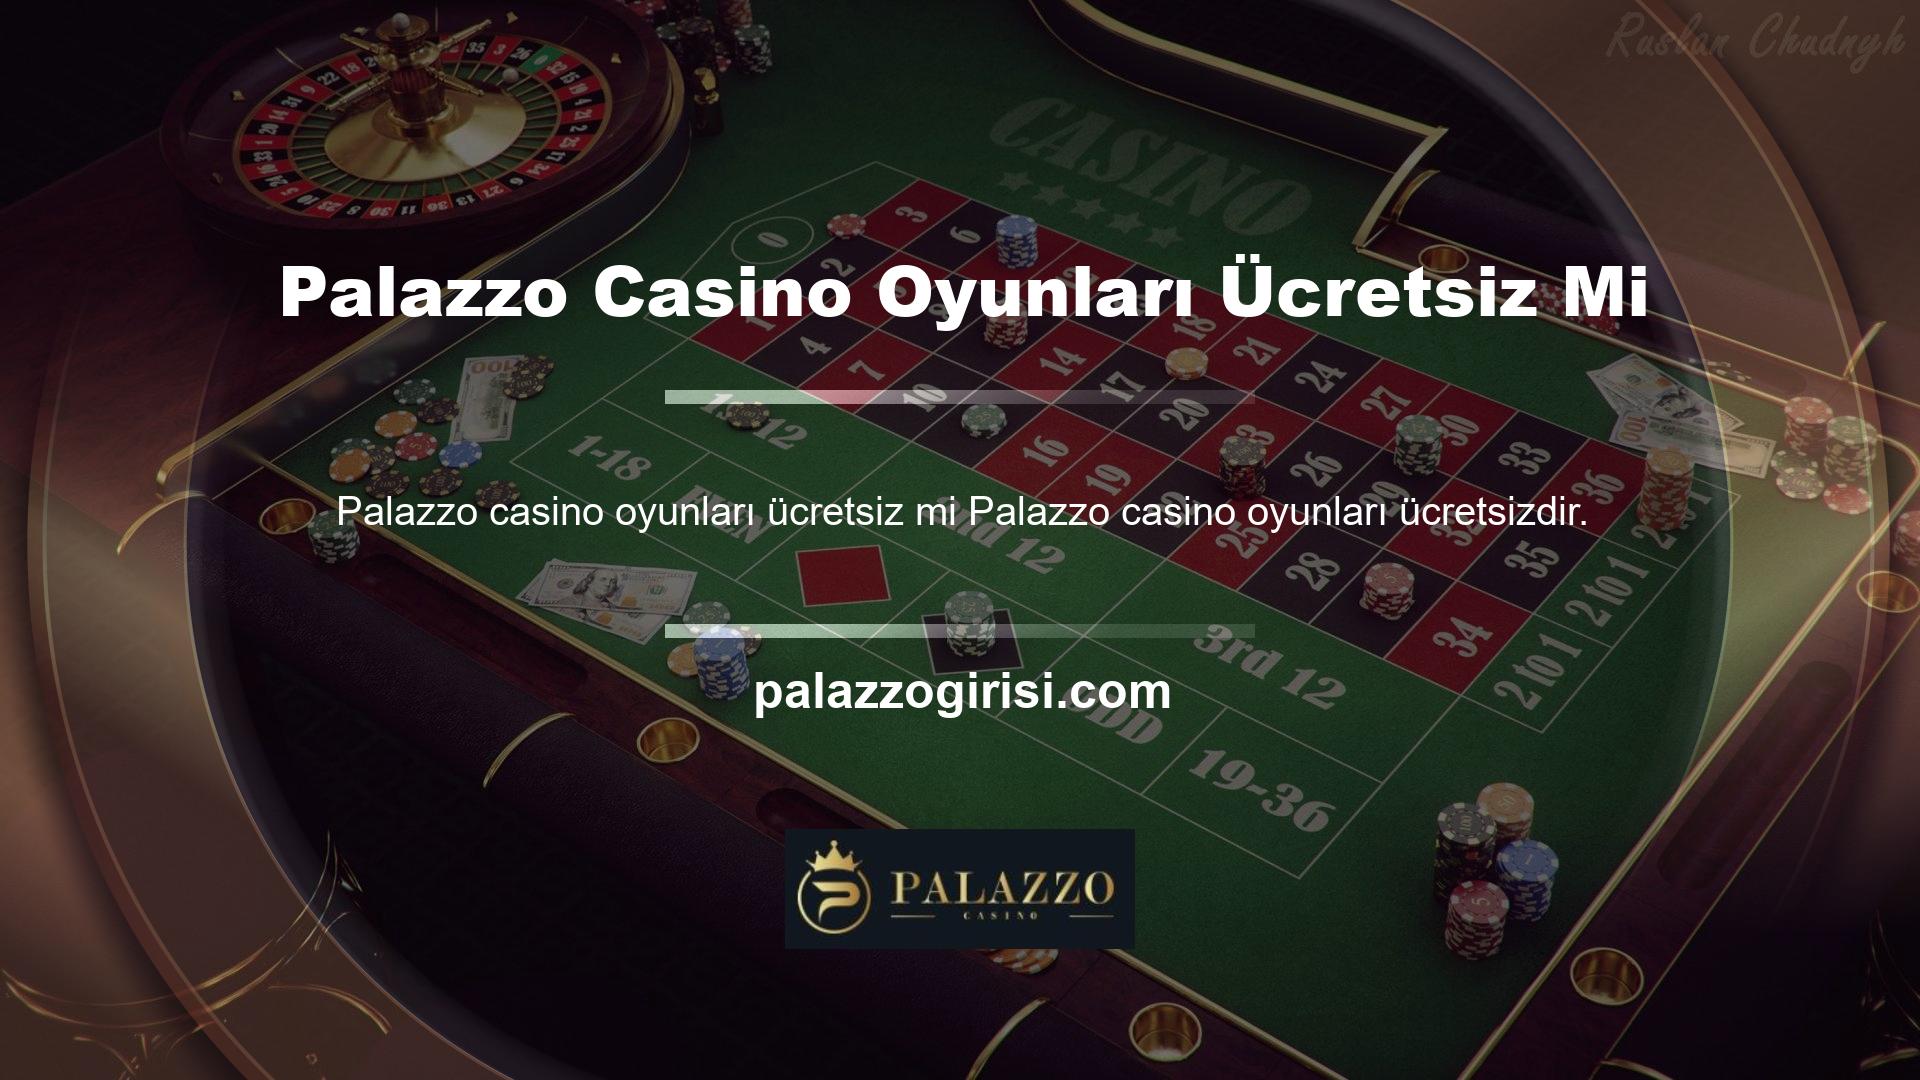 Canlı Bahis Casino hizmetine abone olmak, slotlar ve jackpotlar da dahil olmak üzere çeşitli oyun seçeneklerine erişmenizi sağlar